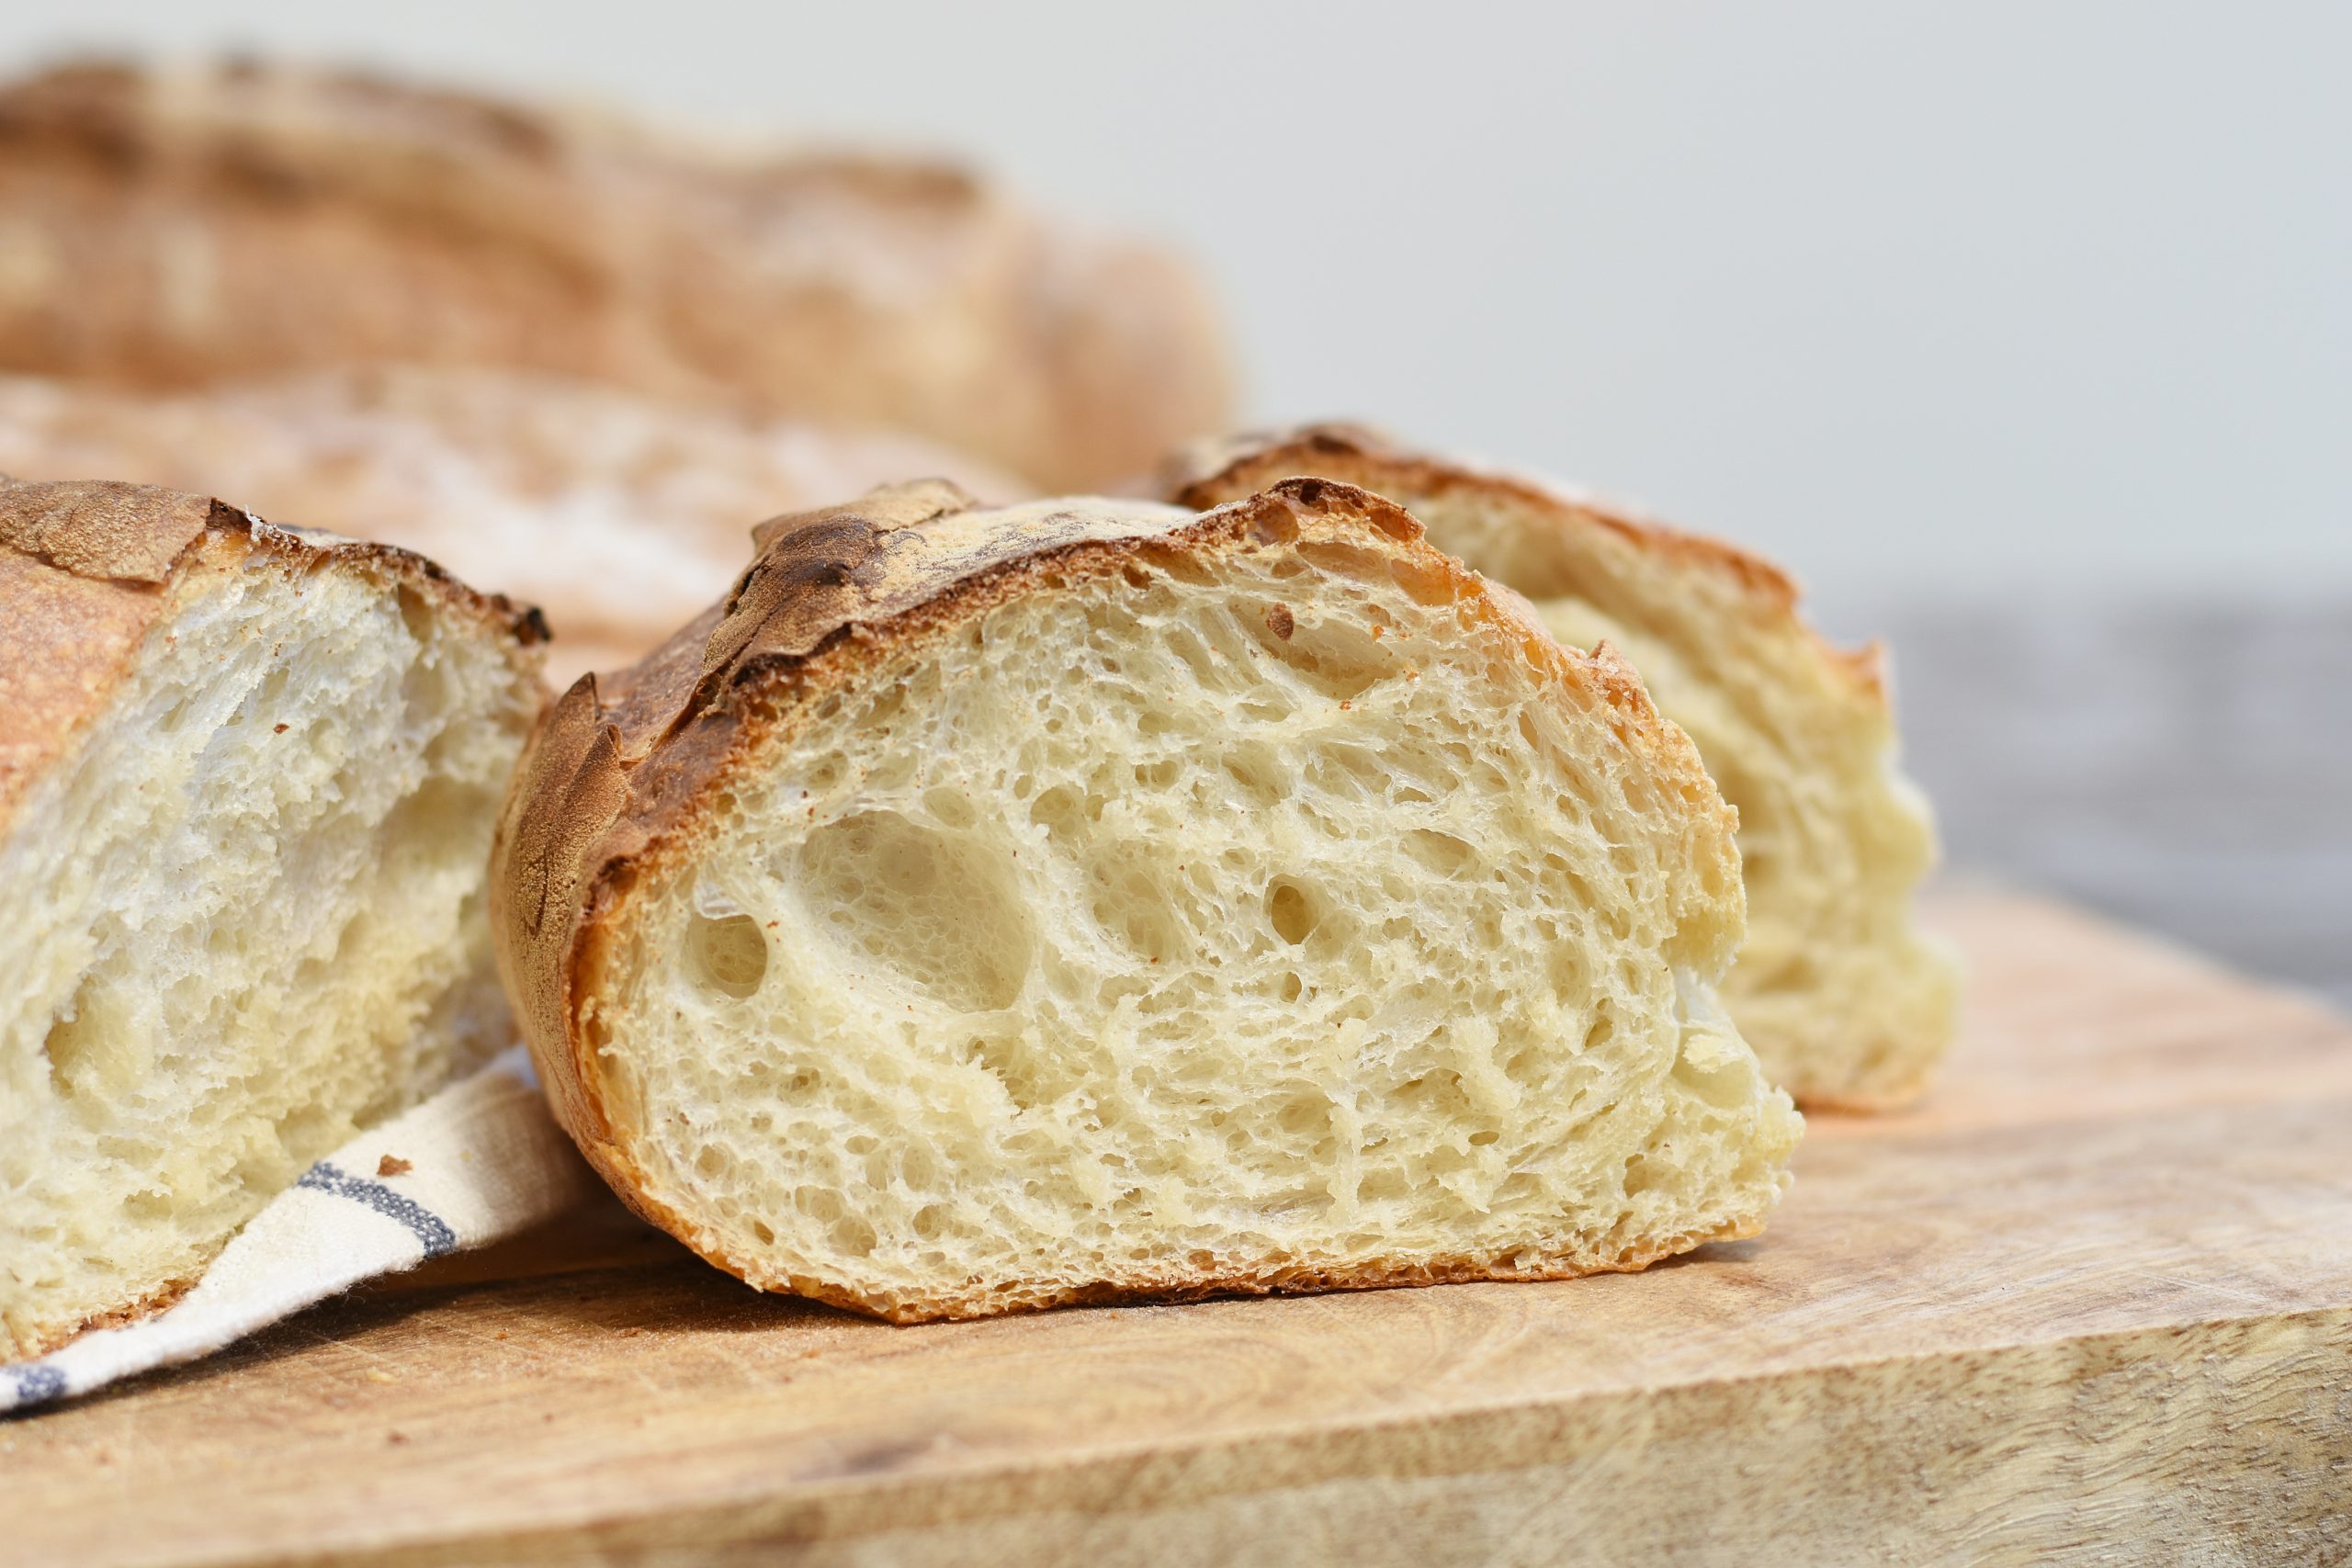 לחם קיפולים ביתי מושלם (ללא מיקסר וללא לישה)